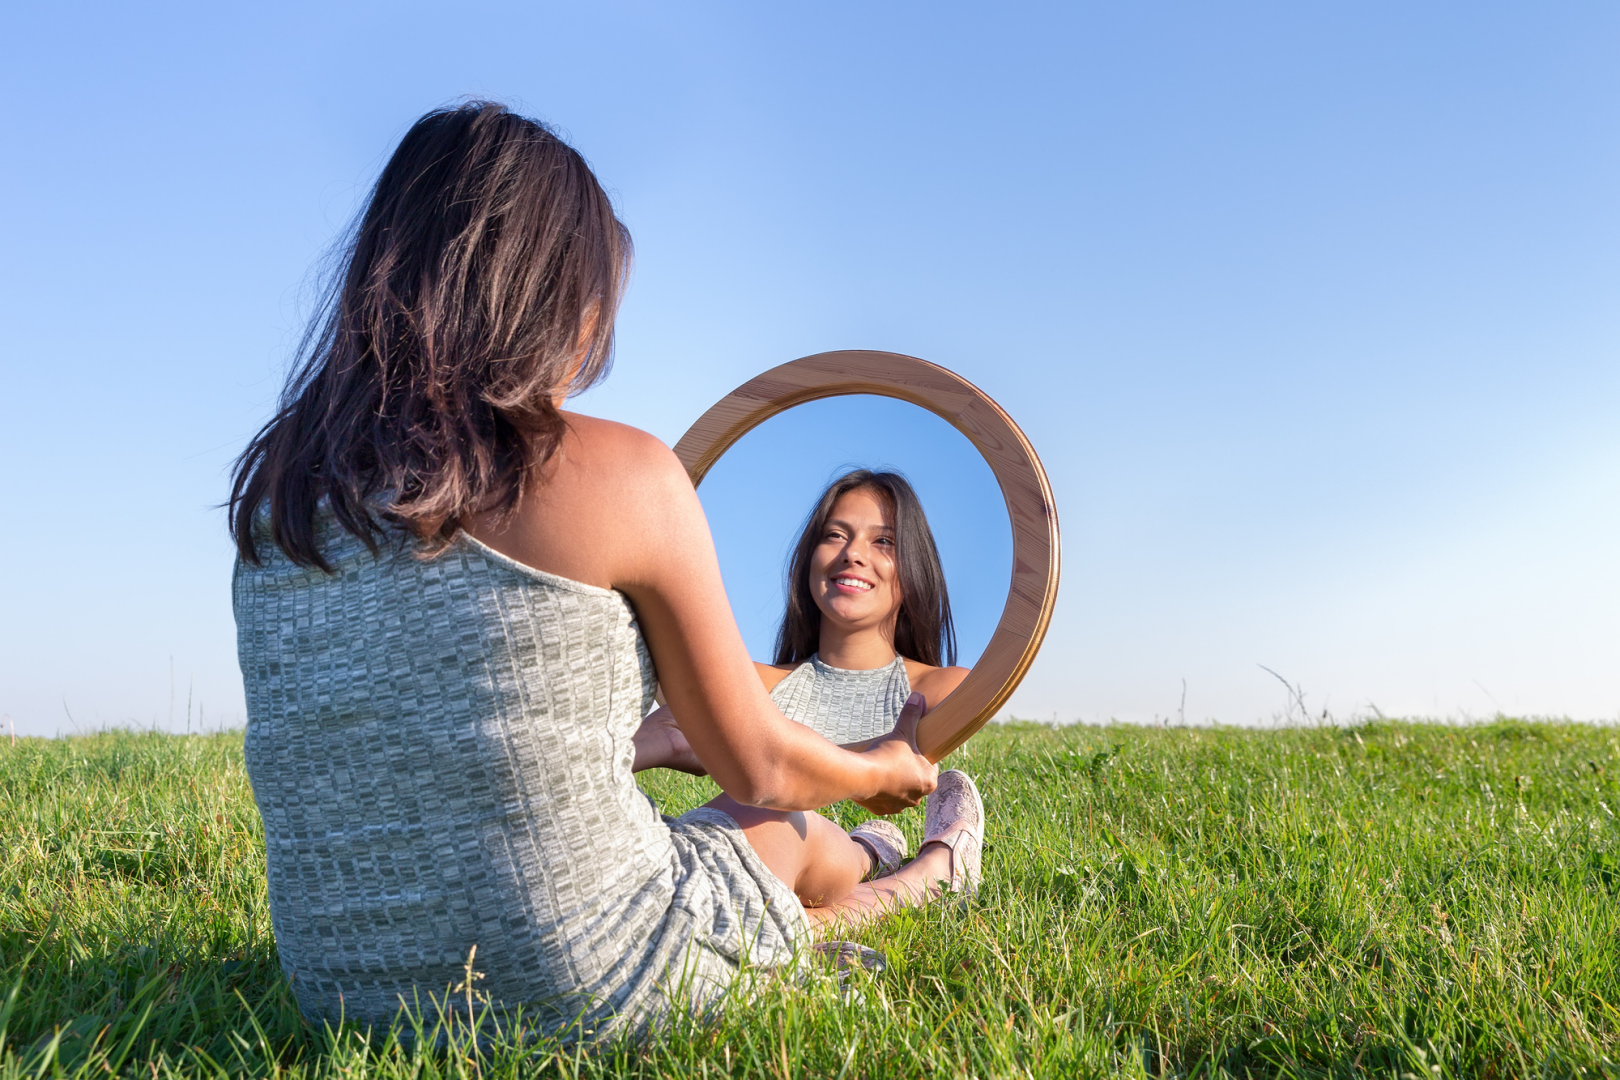 Внимание это сам человек. О женщина. Принятие себя и любовь к себе. Самооценка. Отражение в зеркале.